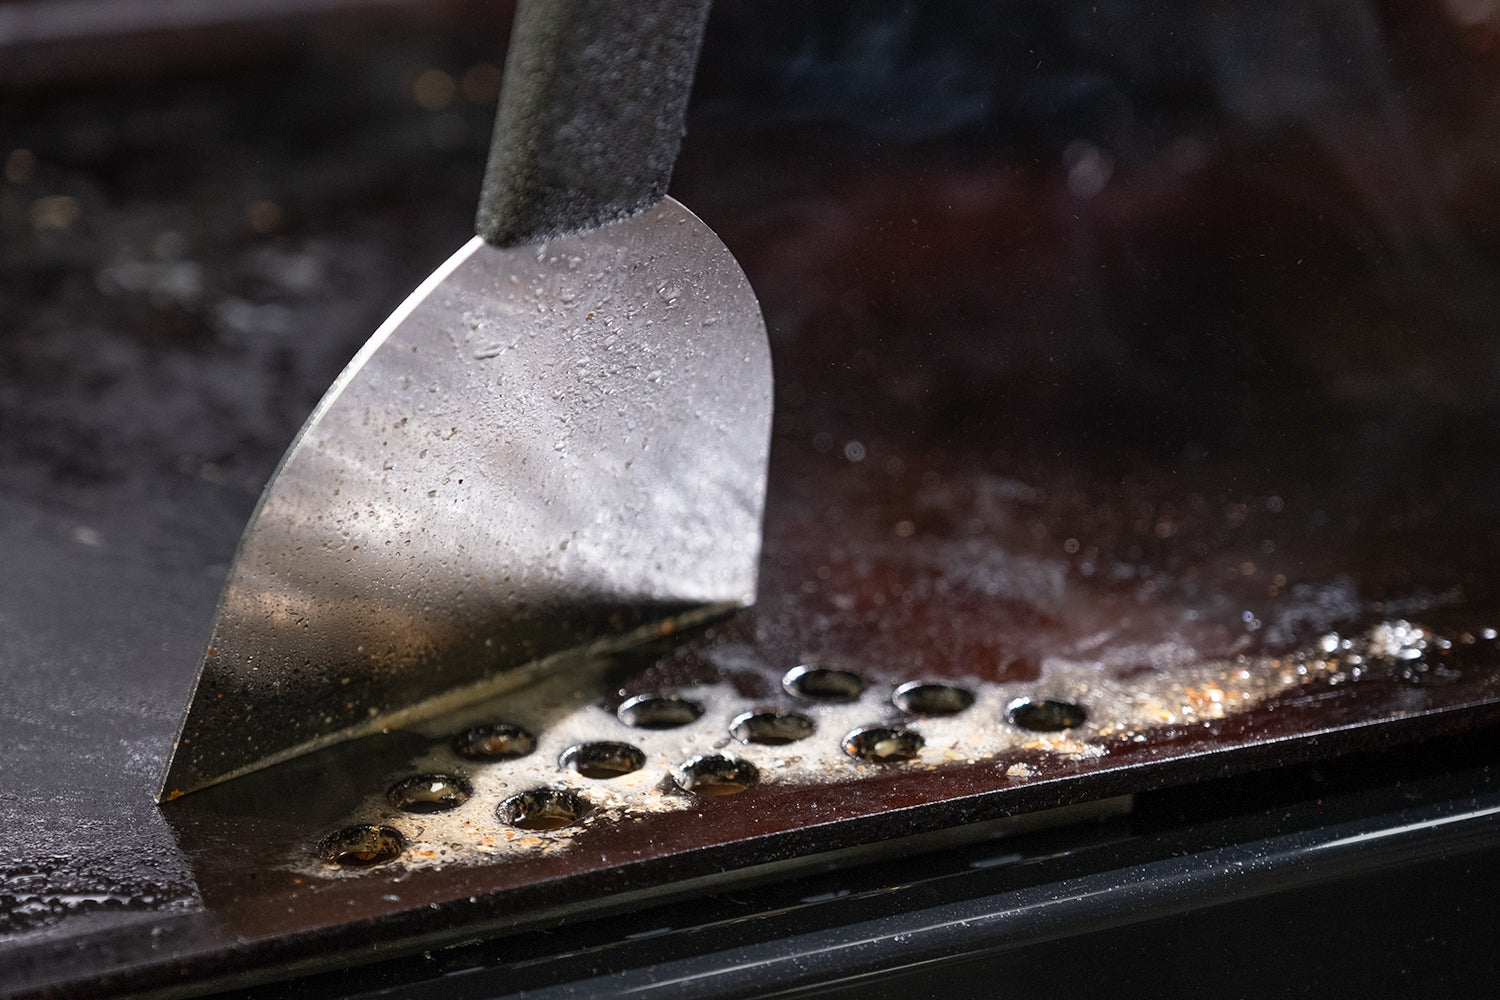 Pizza Baking Steel - Steelmade Cookware